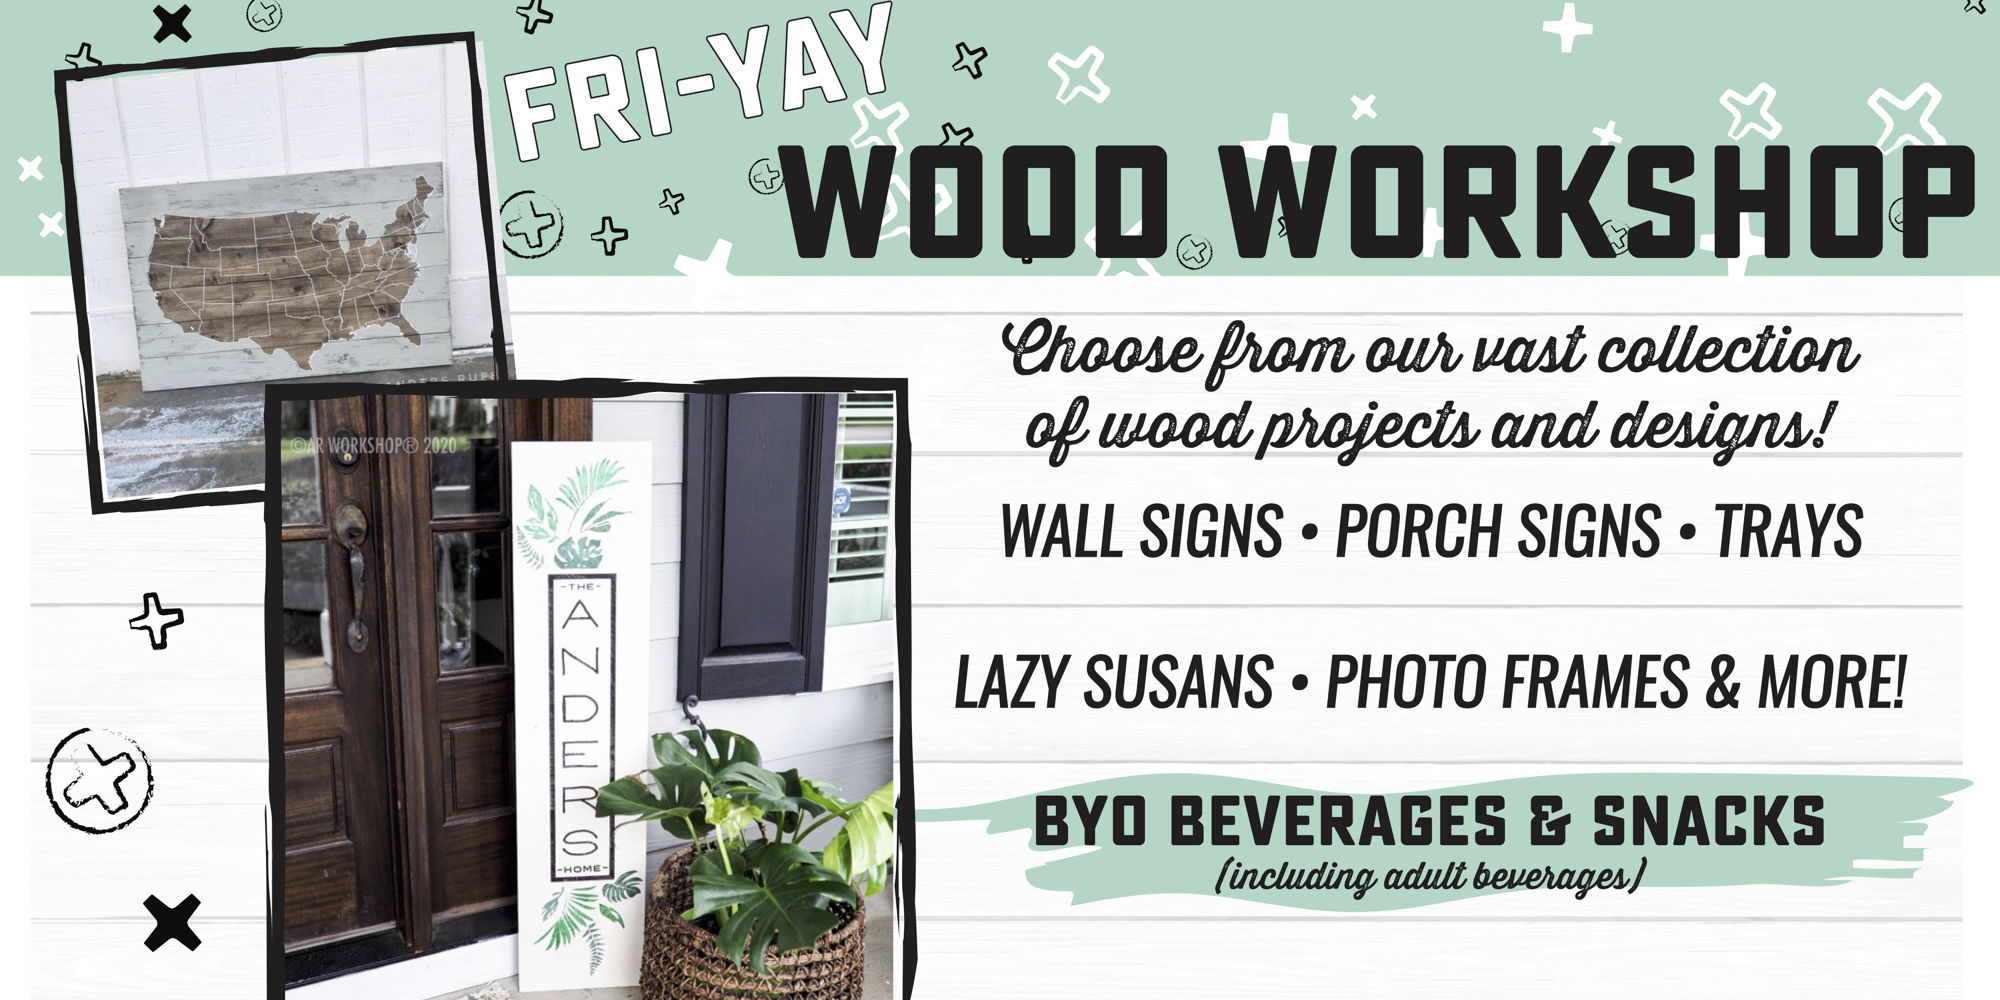 Fri-YAY Wood Workshop! promotional image